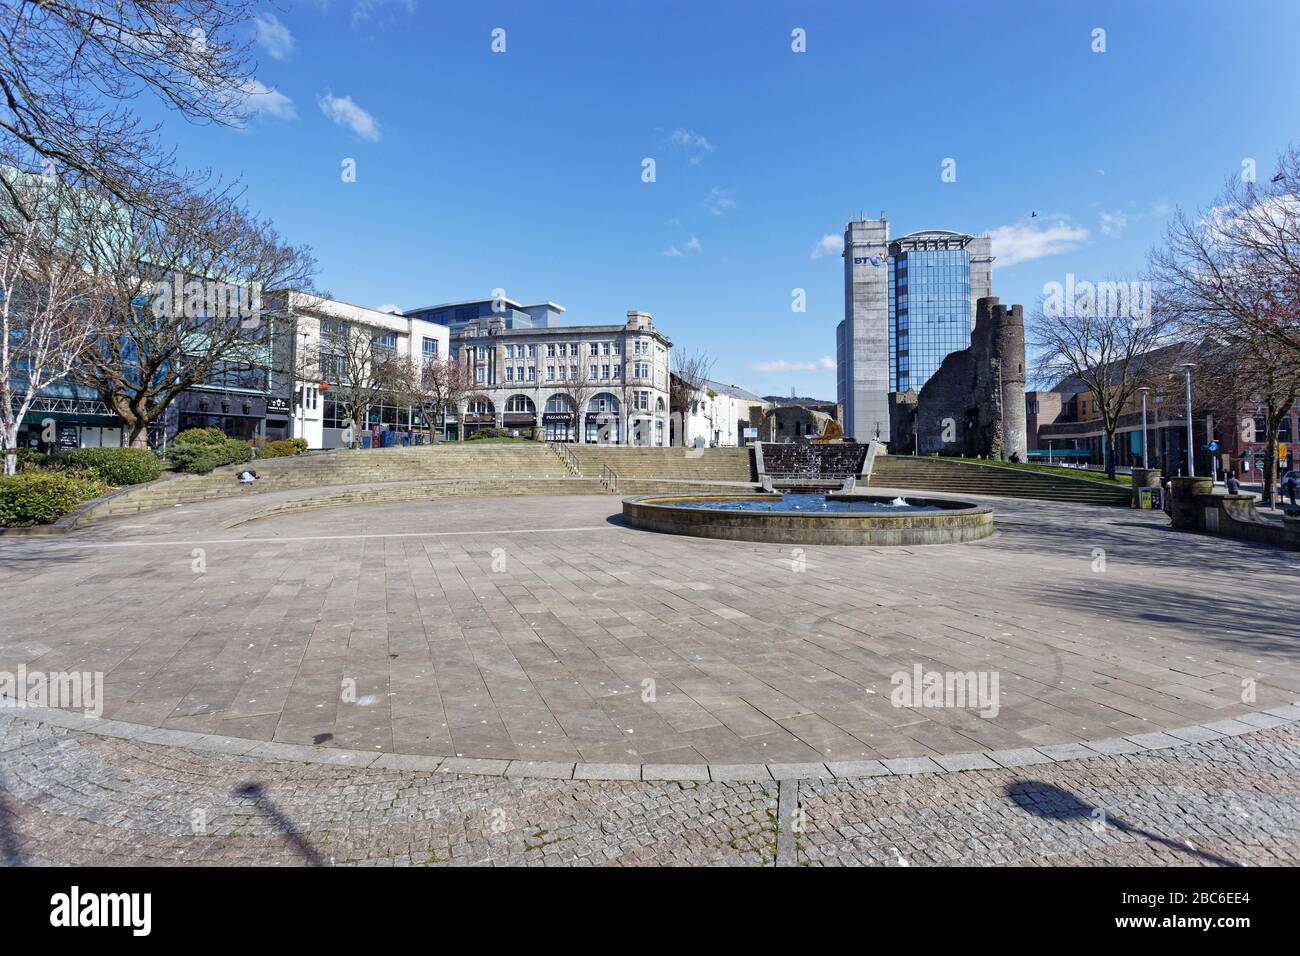 Bild: Castle Square im Stadtzentrum bleibt verlassen, Swansea, Wales, Großbritannien. Dienstag, 31. März 2020 Re: Covid-19 Coronavirus Pandemie, Großbritannien. Stockfoto